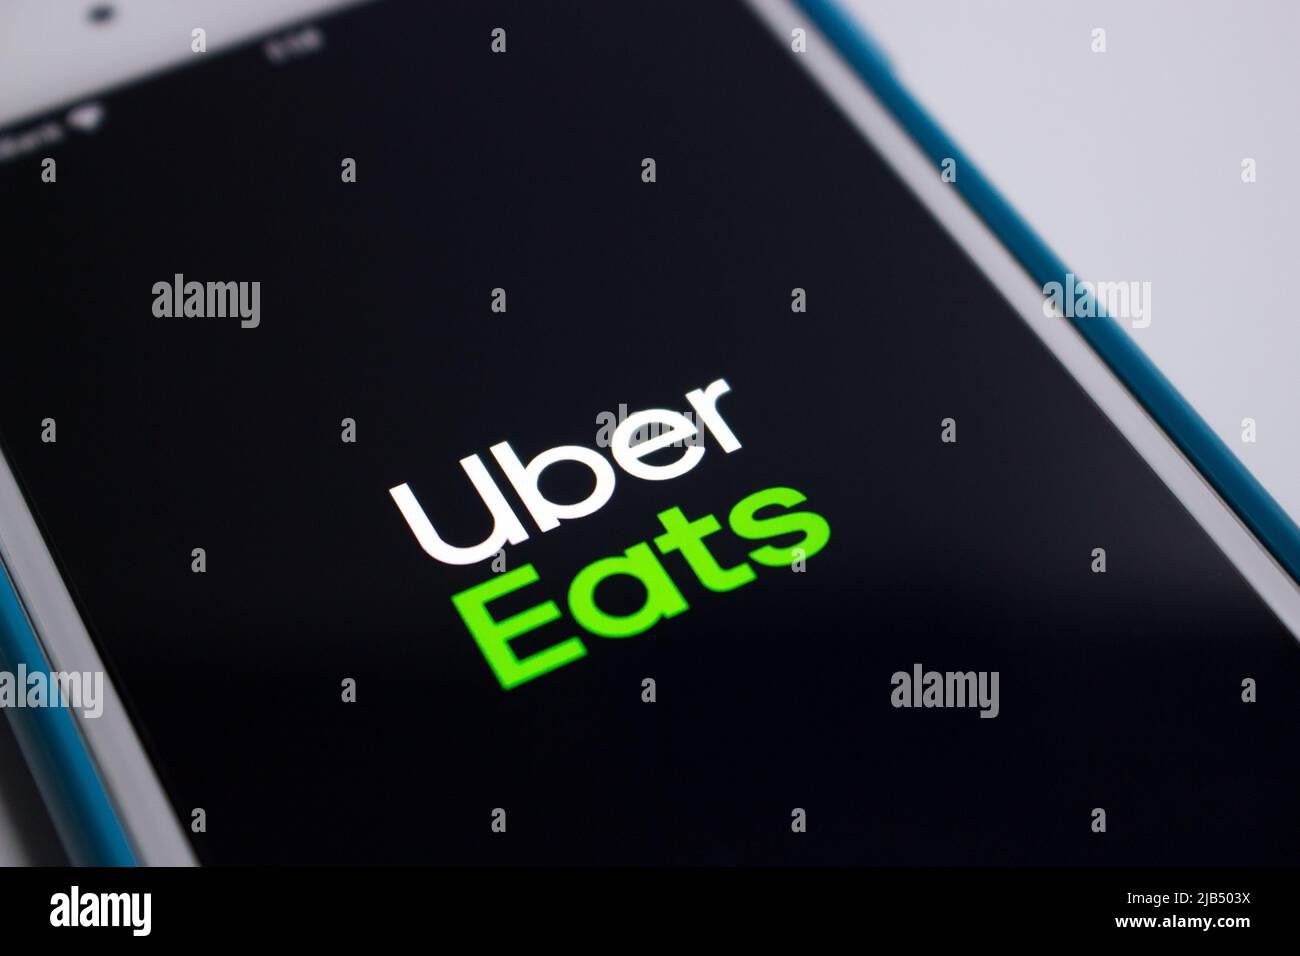 Kumamoto, Japon - 7 mai 2020 : logo d'Uber Eats, une plate-forme américaine de commande et de livraison de produits alimentaires en ligne lancée par Uber, sur l'écran de l'iPhone. Banque D'Images